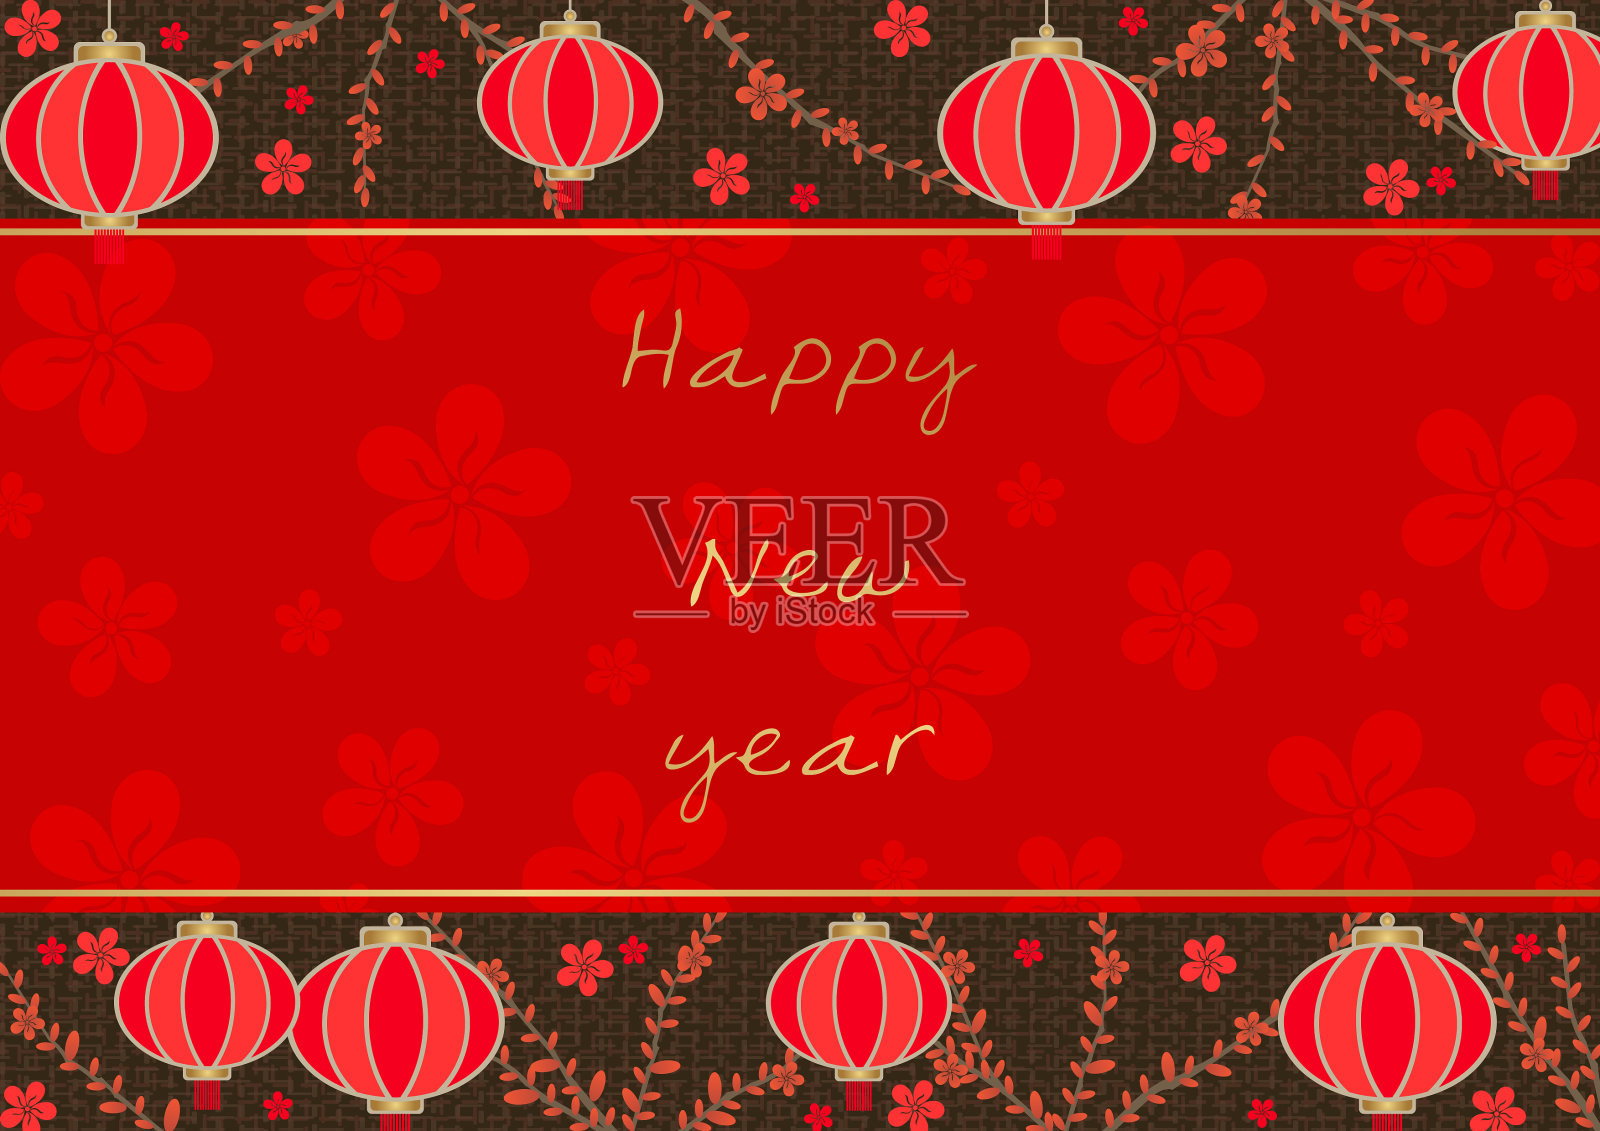 灯笼，枸杞和红花载体装饰在中国新年或秋季节日活动。设计模板素材